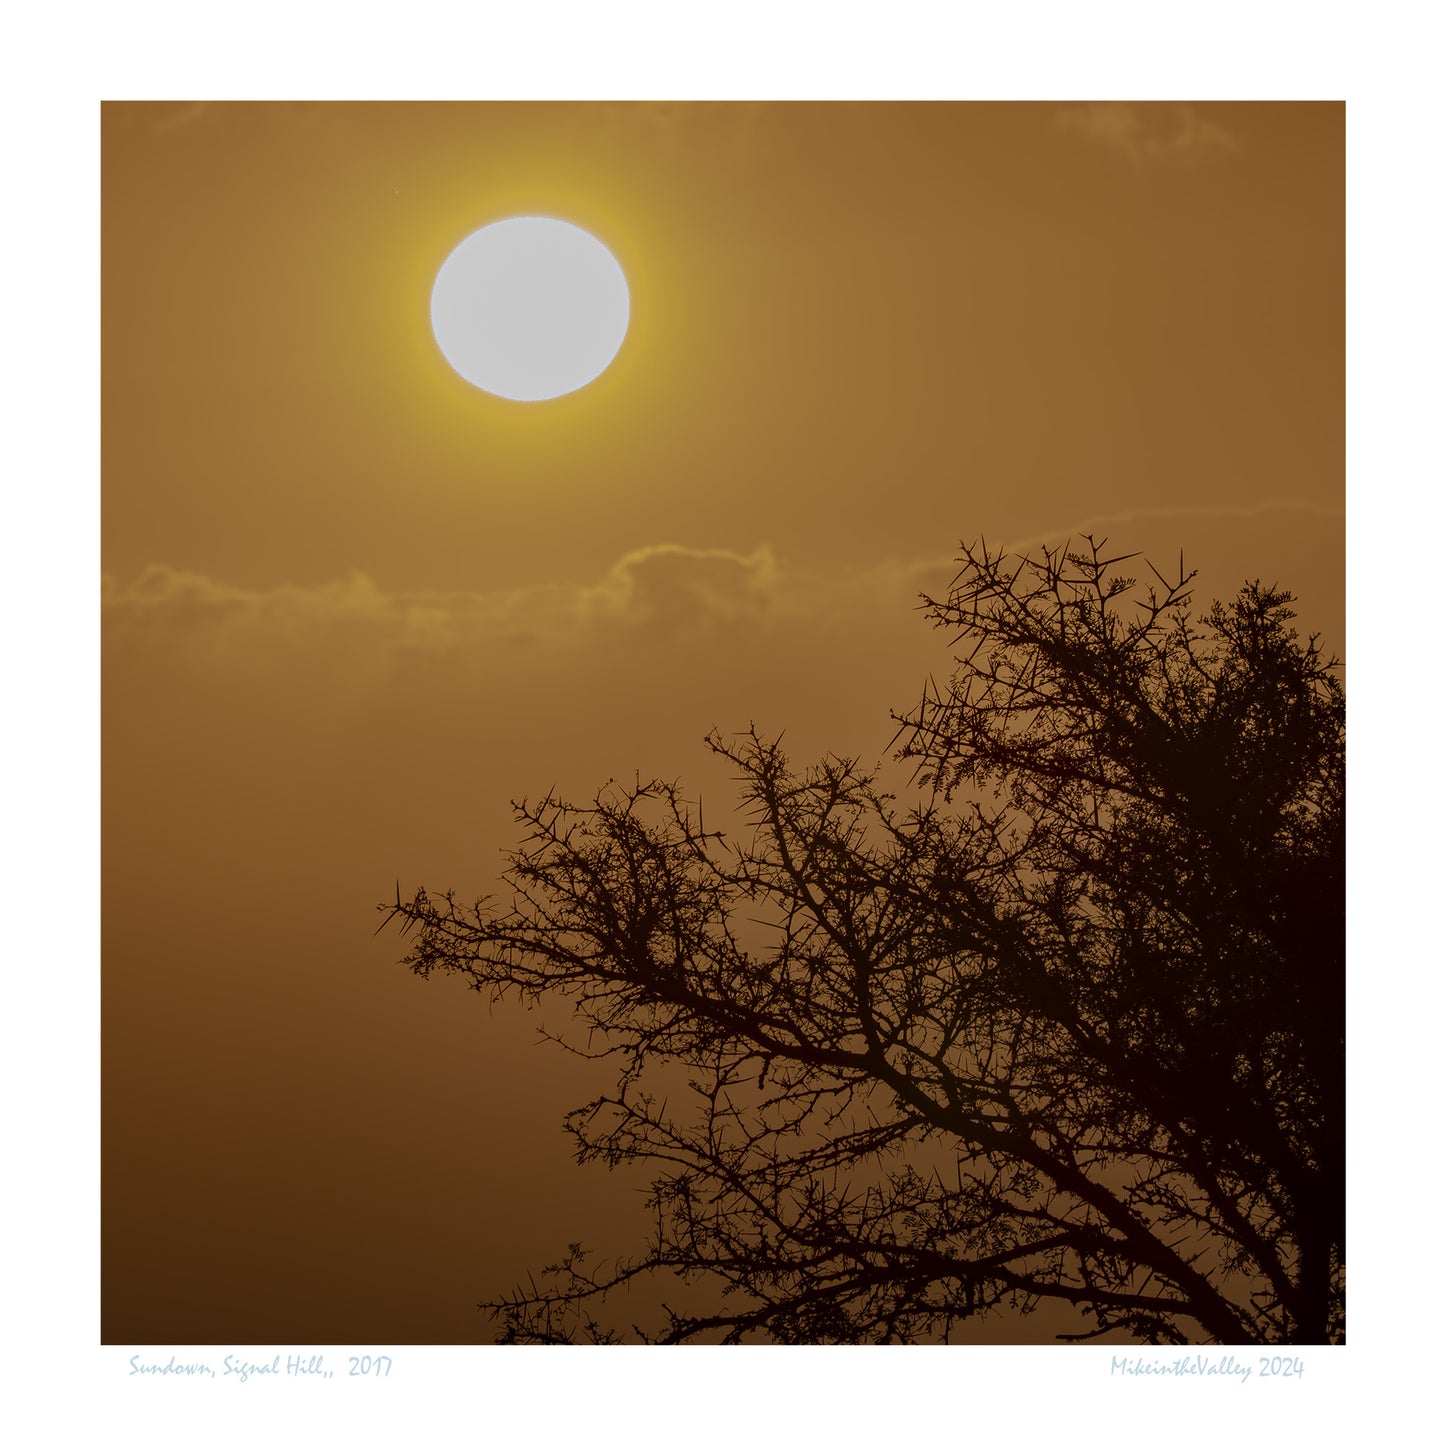 Sonnenuntergang mit goldgelbem Himmel erlebt auf dem Signal Hill in Kapstadt. Im Vordergrund die stacheligen Äste eines Fiebrbaums, einer Akazienart.